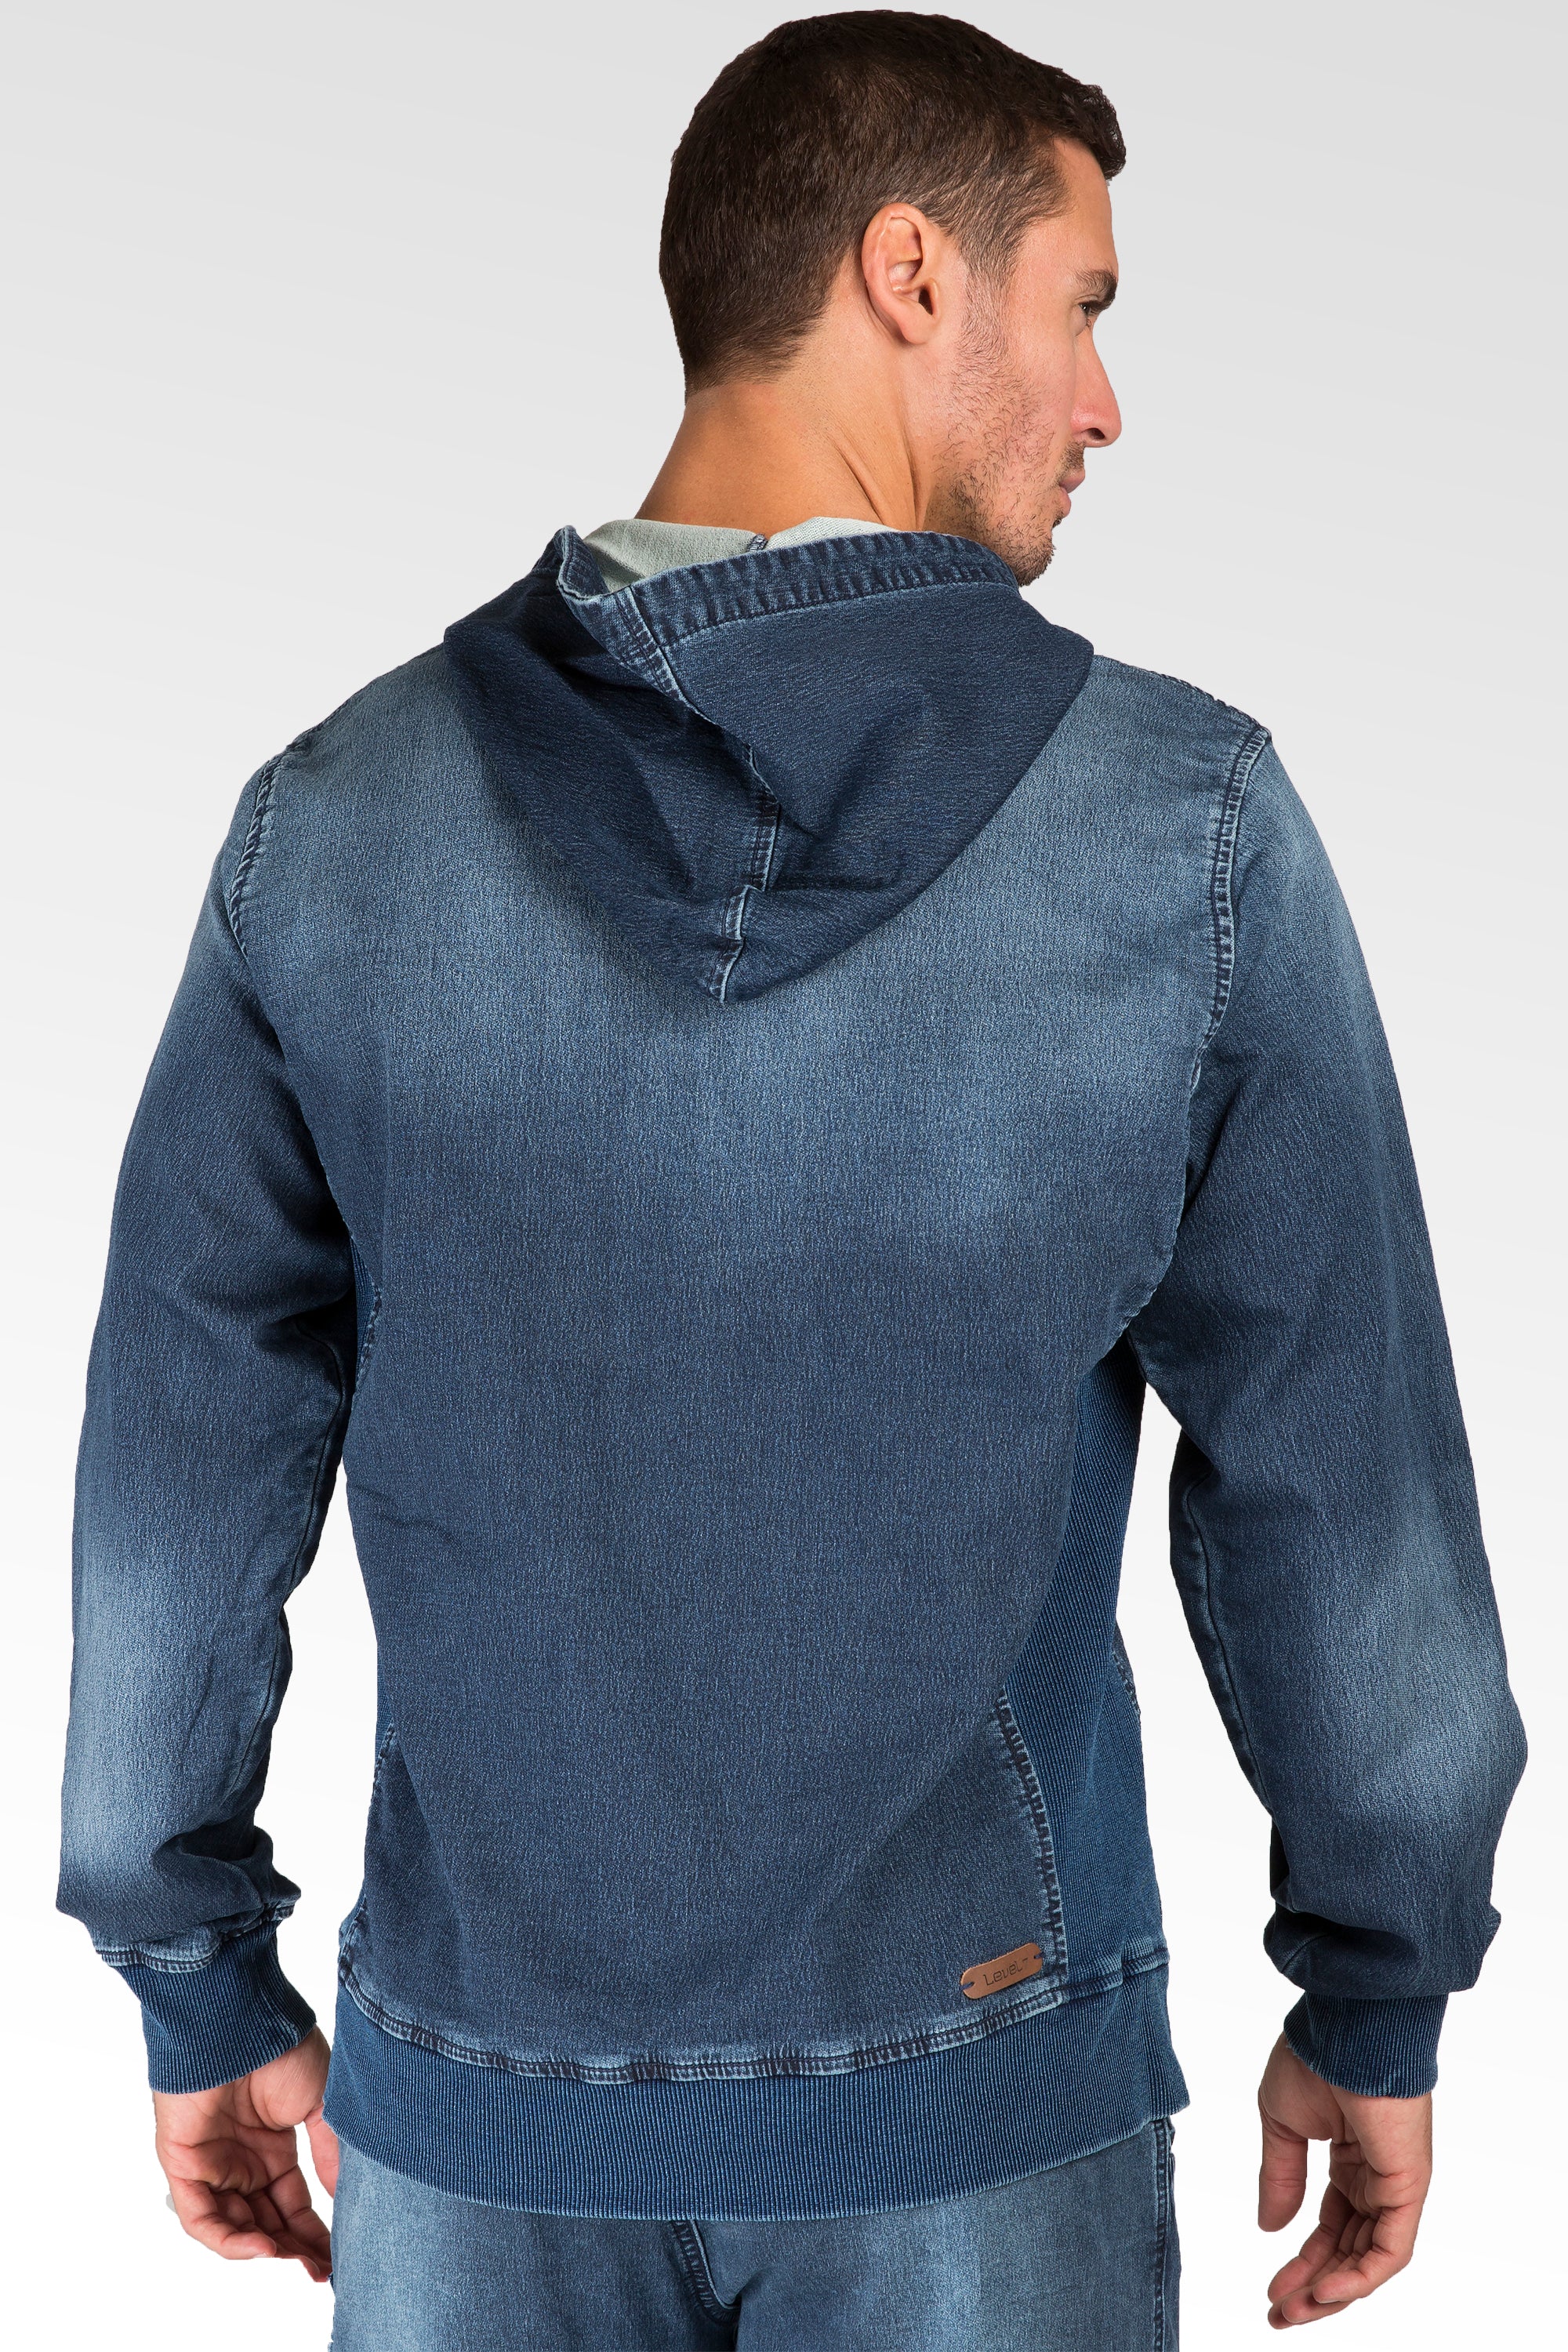 Level 7 Men's Knit Denim Vintage Washed Pullover Hoodie Shirts